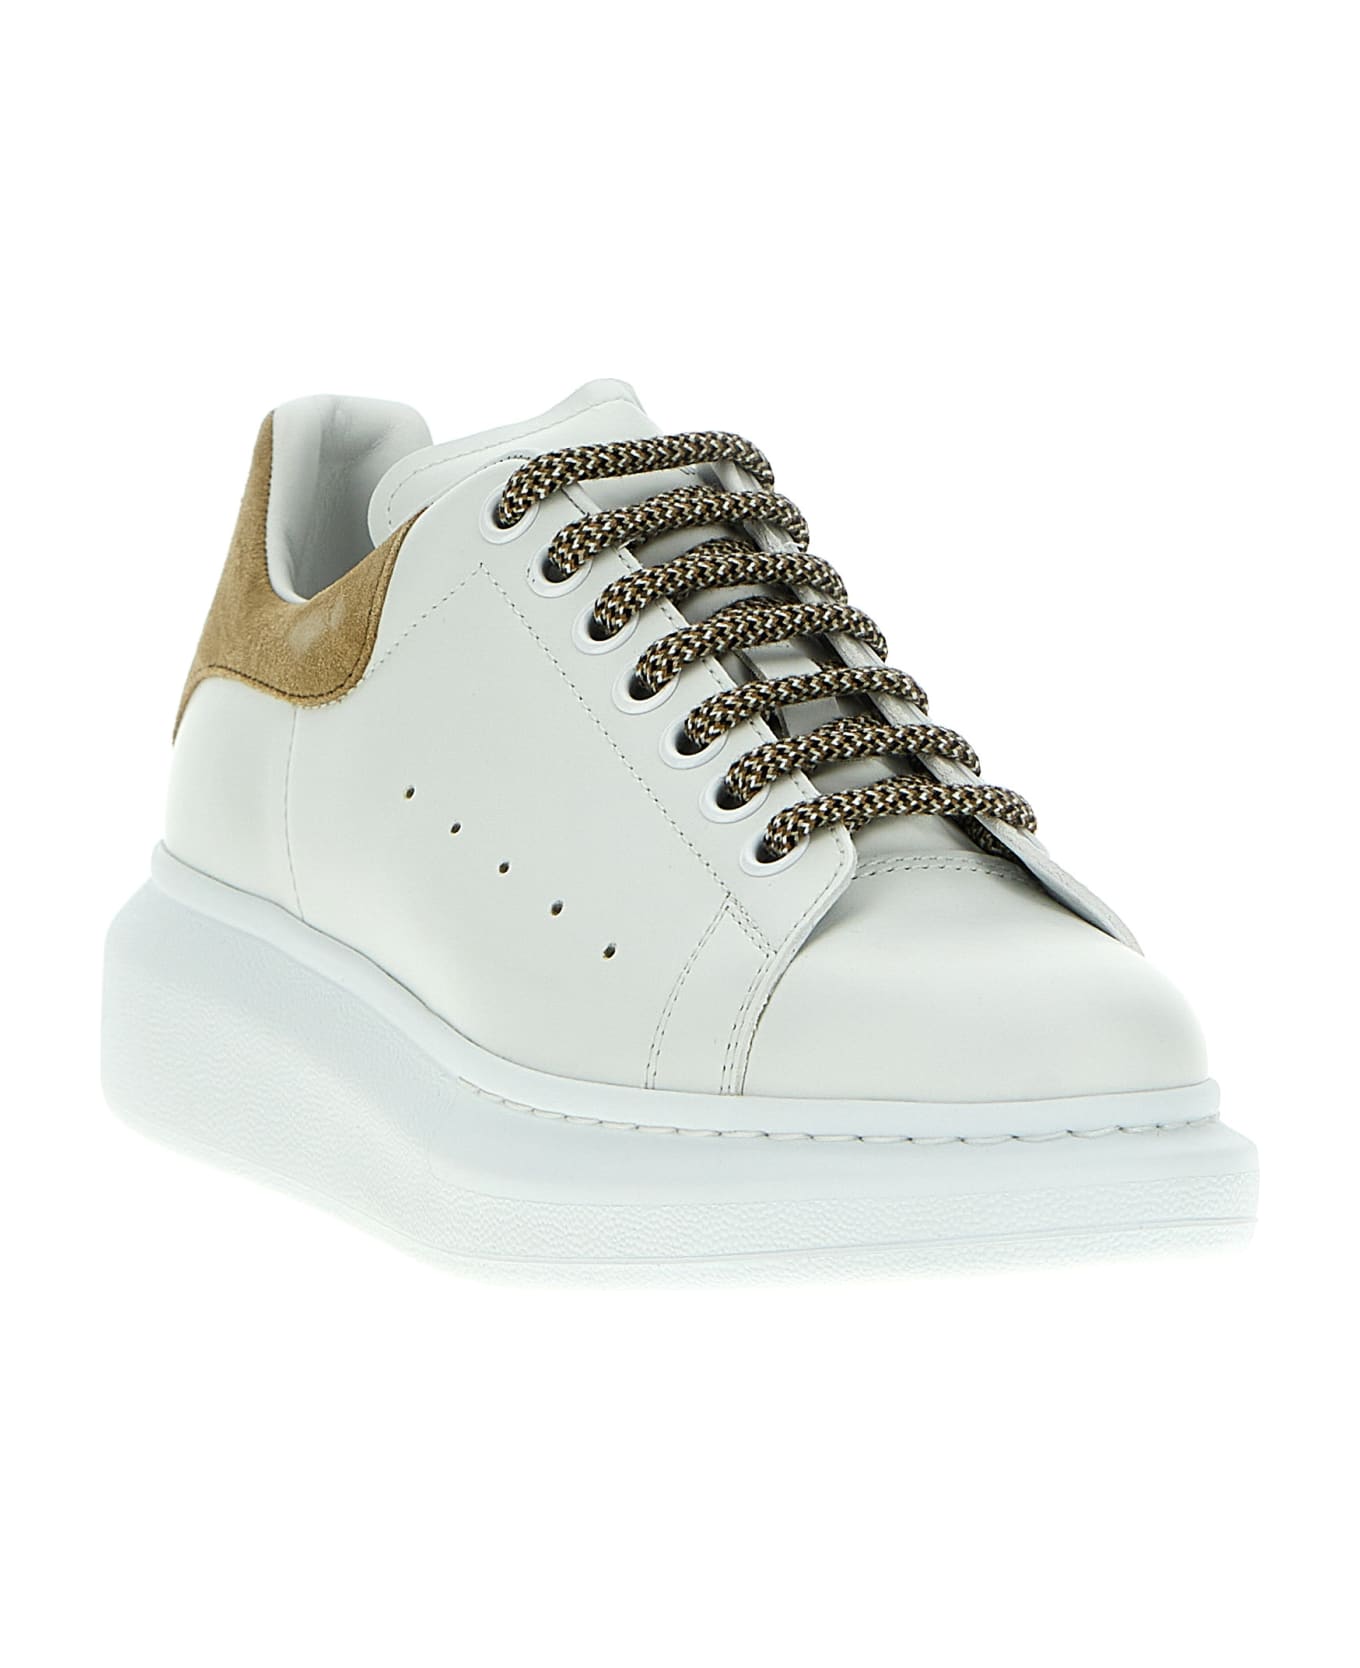 Alexander McQueen Sneakers - White Camel